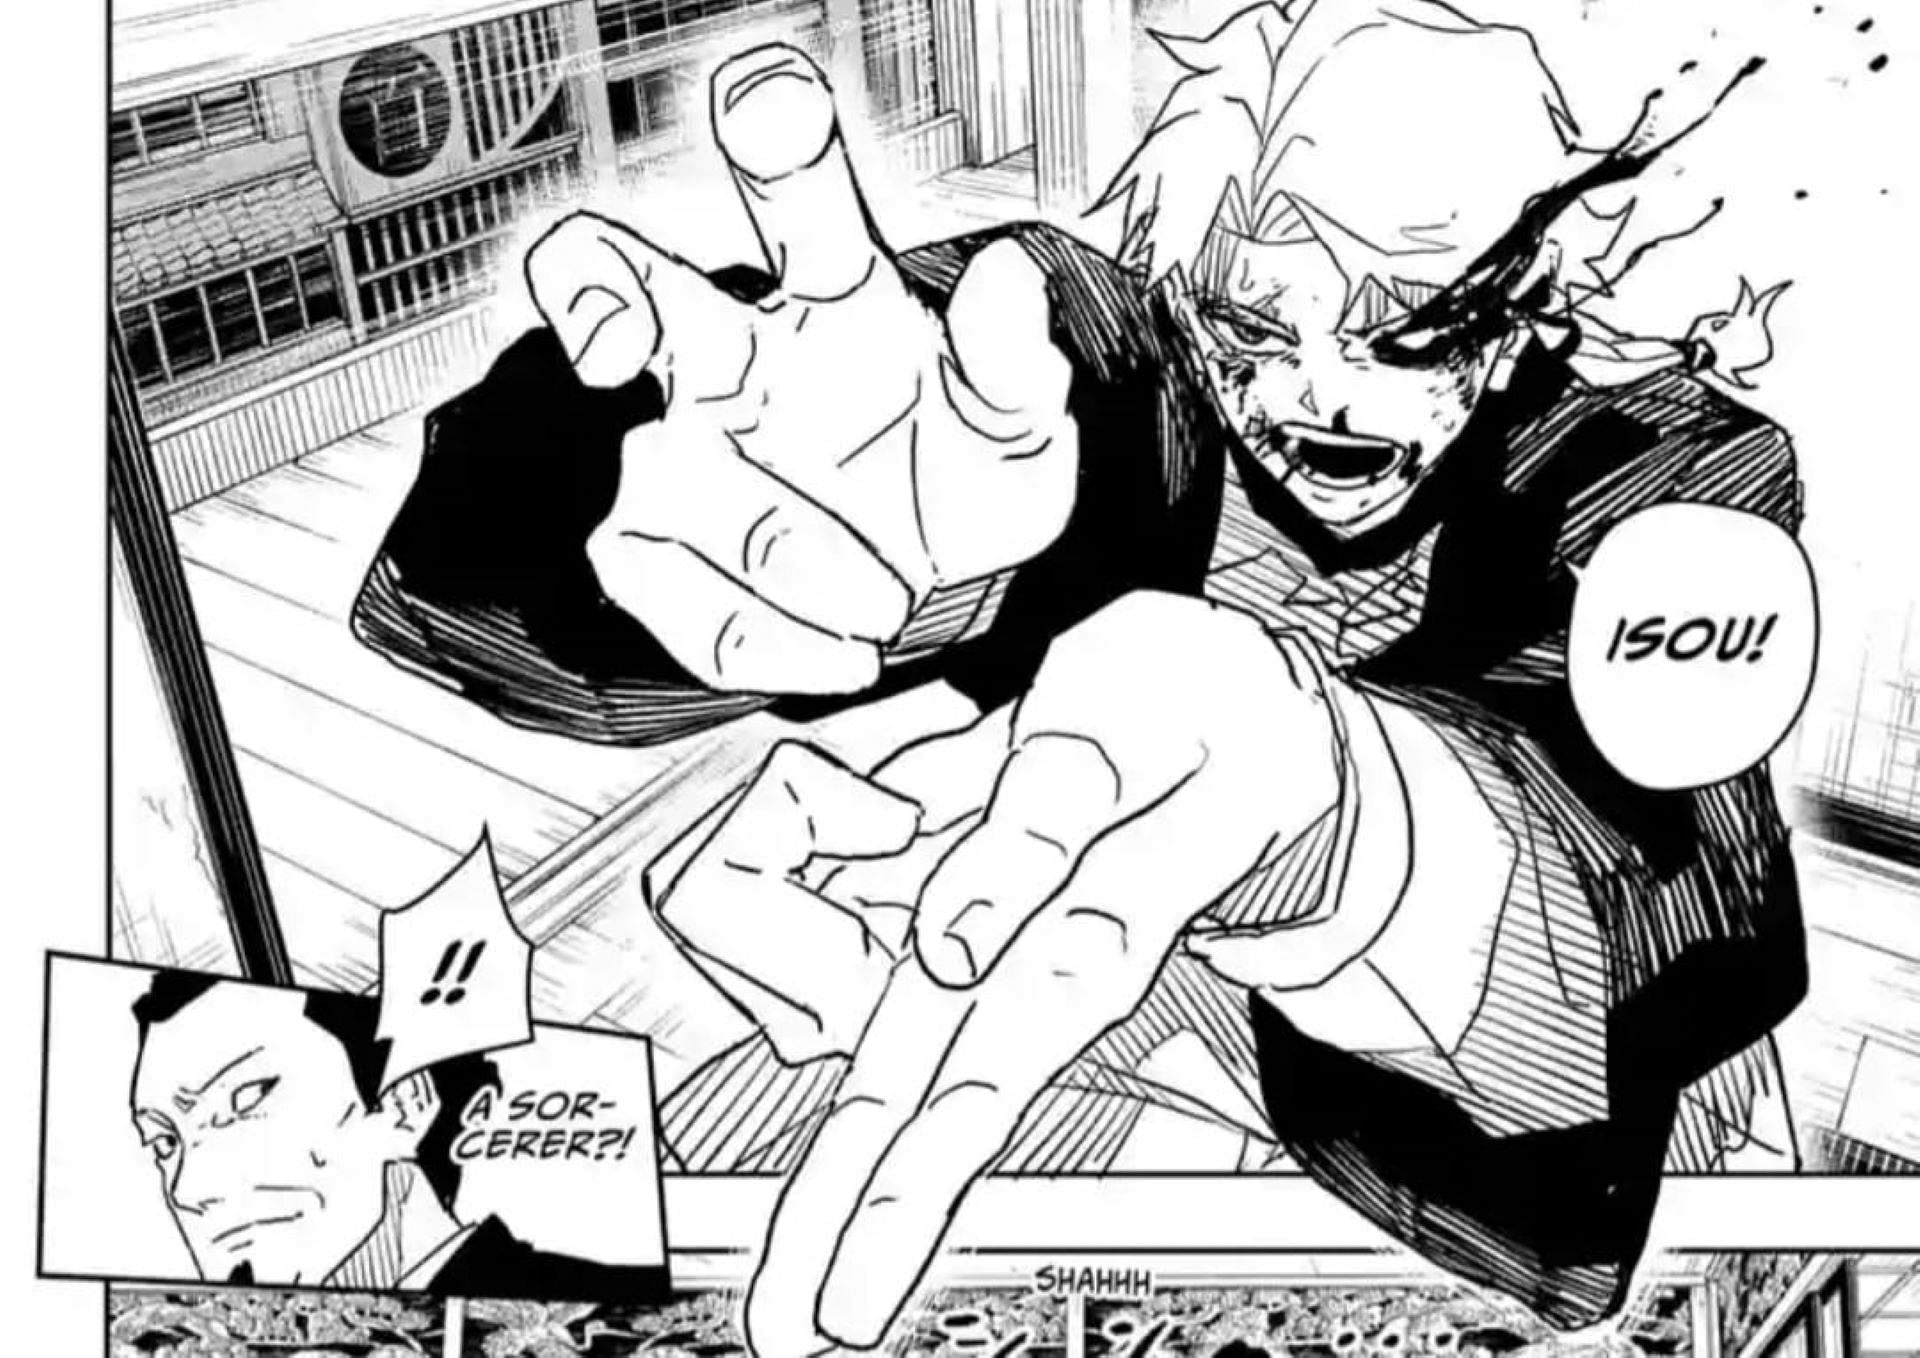 The boy uses Isou in Kagurabachi chapter 19 (Image via Takeru Hokazono/Shueisha)